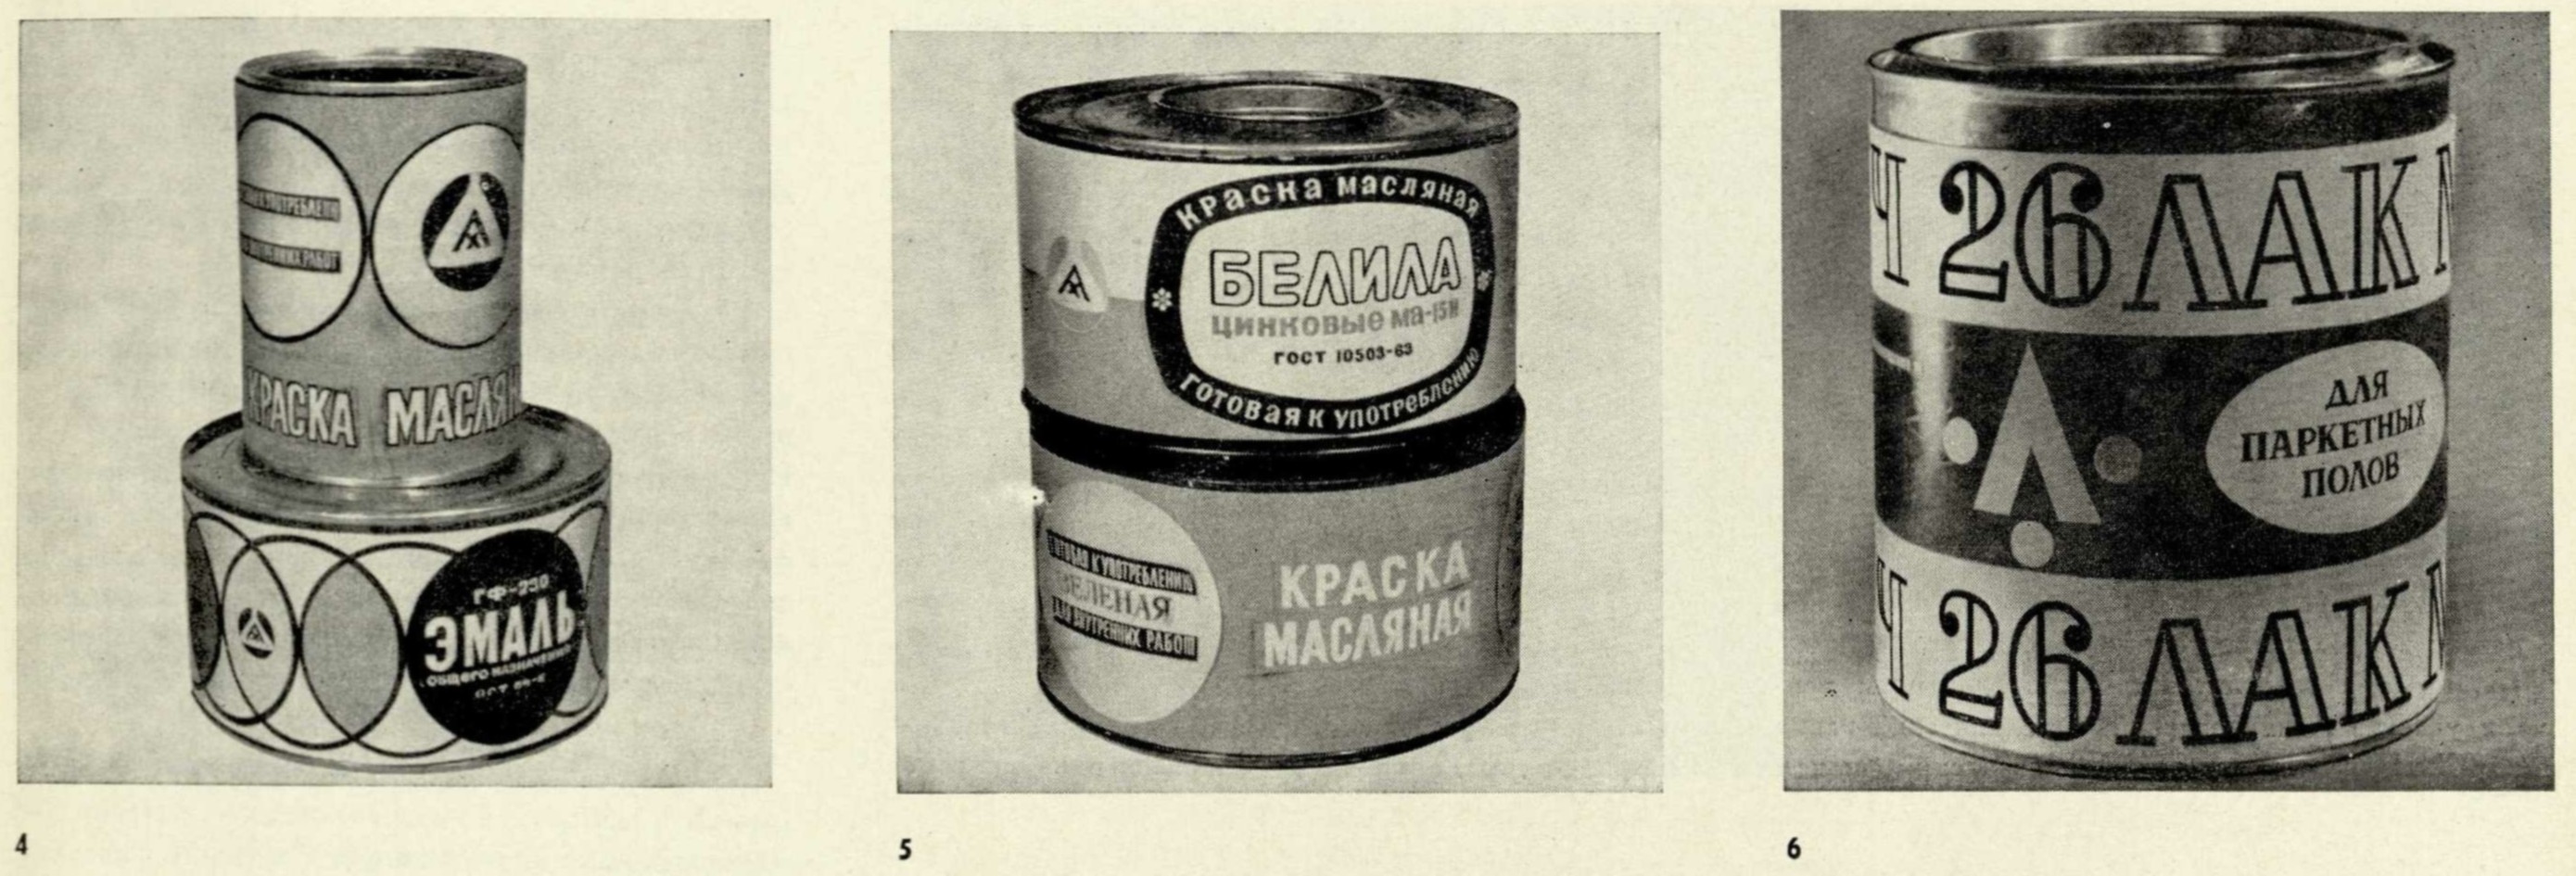 Этикетки для лакокрасочной продукции (авторы: А. Молев, Н. Ефимовская, Н. Рыбникова) наклеиваются на банки